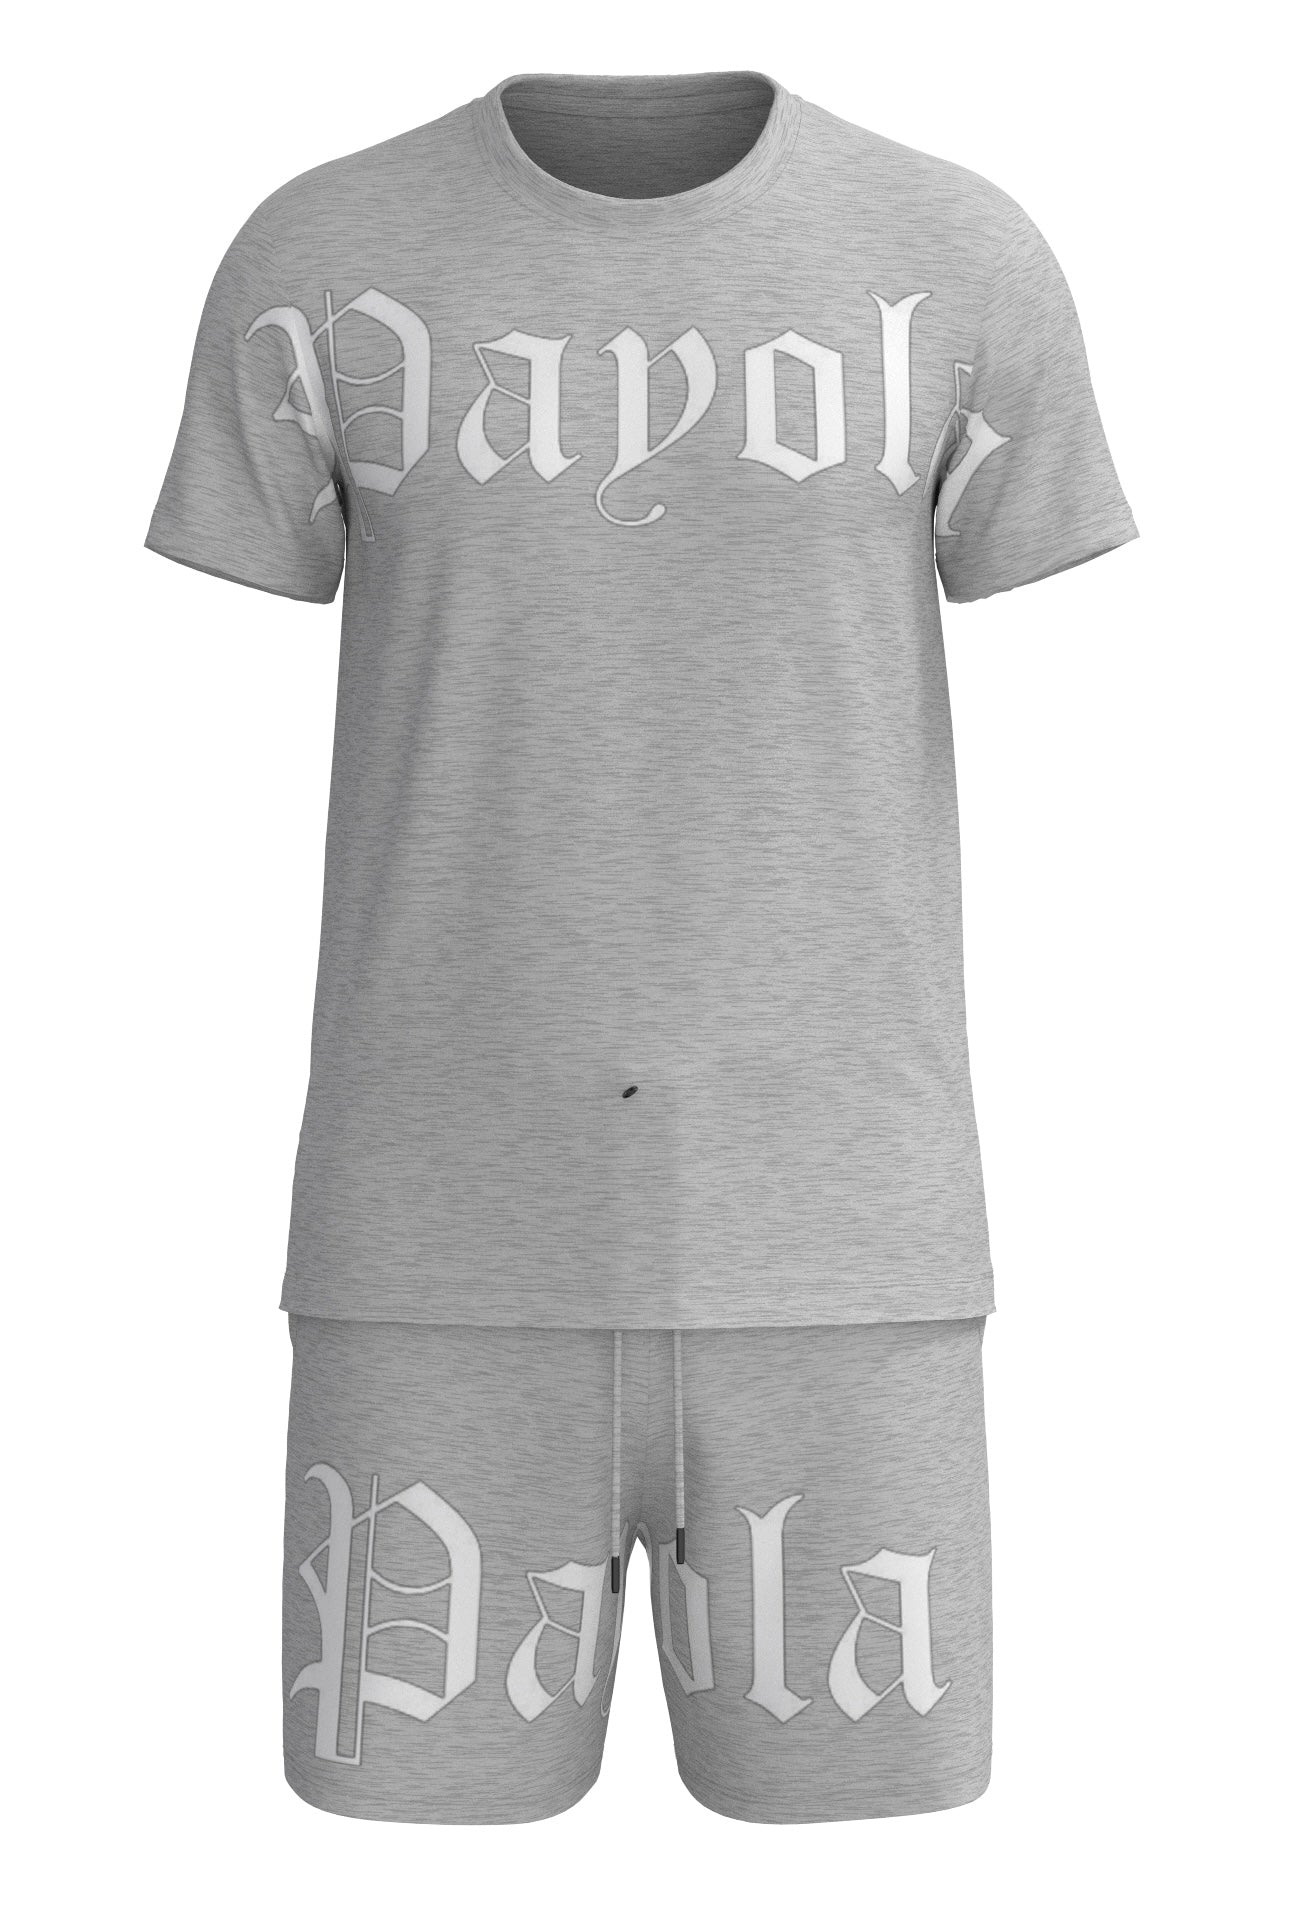 Payola Old English Set (Grey)